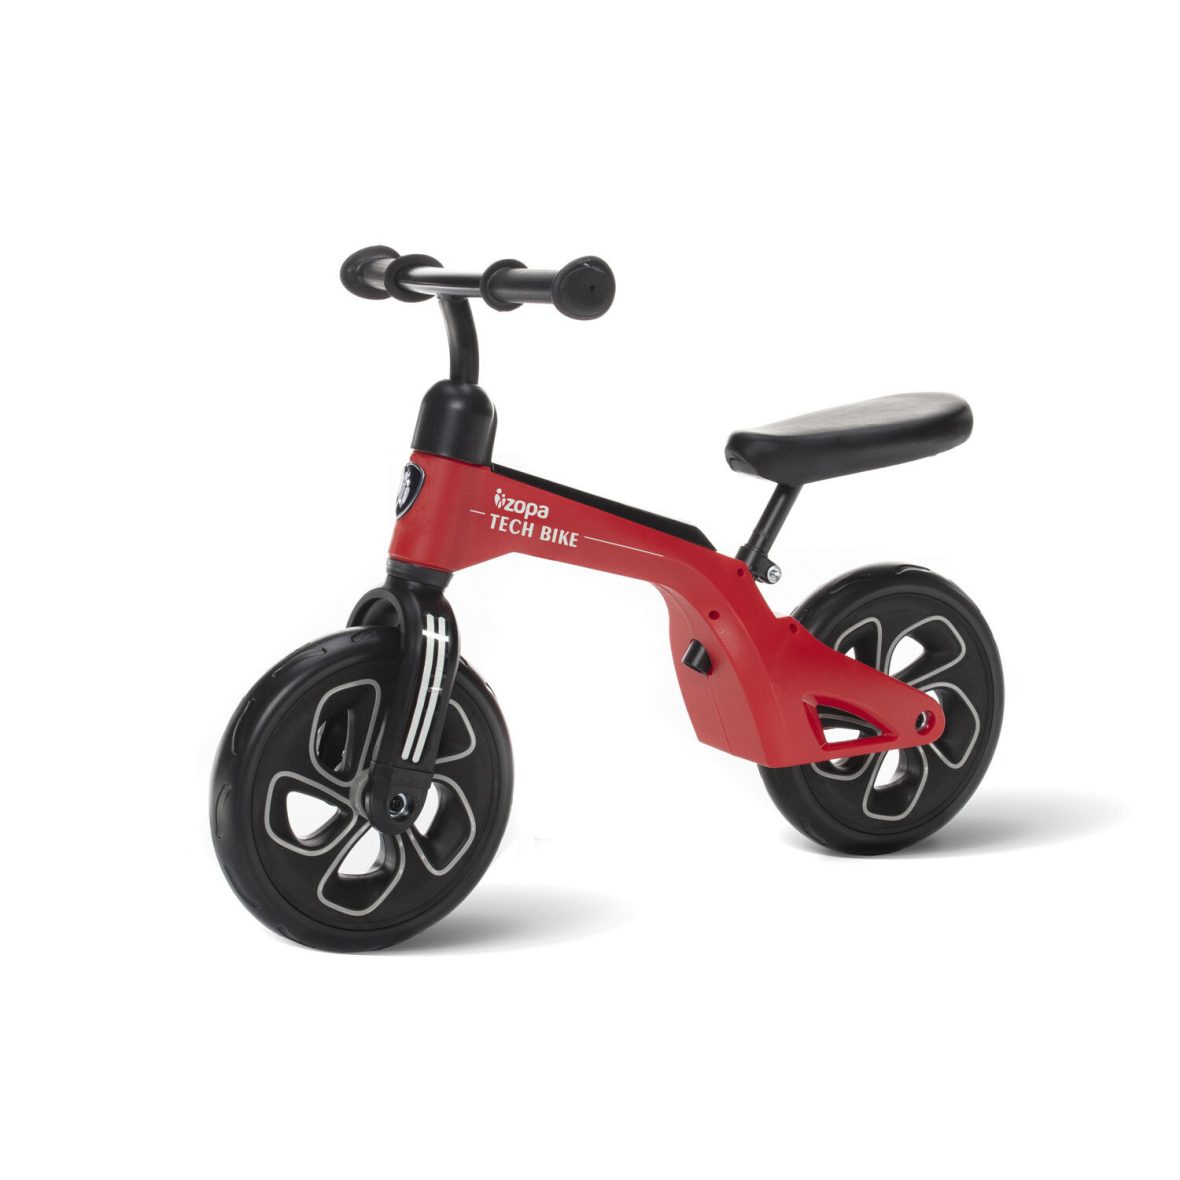 ZOPA – Bicicleta Tech Bike Red